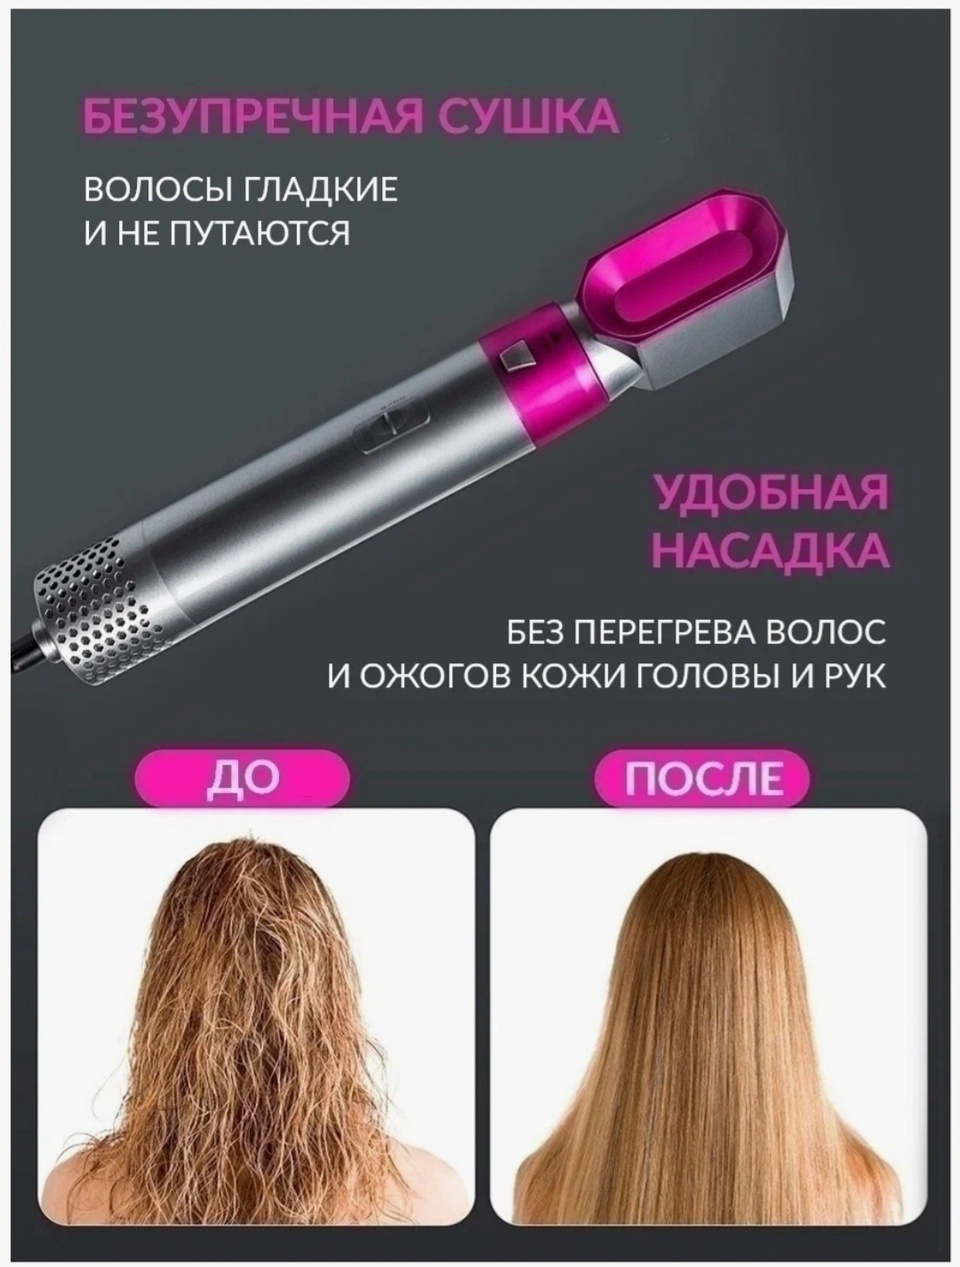 Мультистайлер для волос 5 в 1 - 2 100 ₽, заказать онлайн.